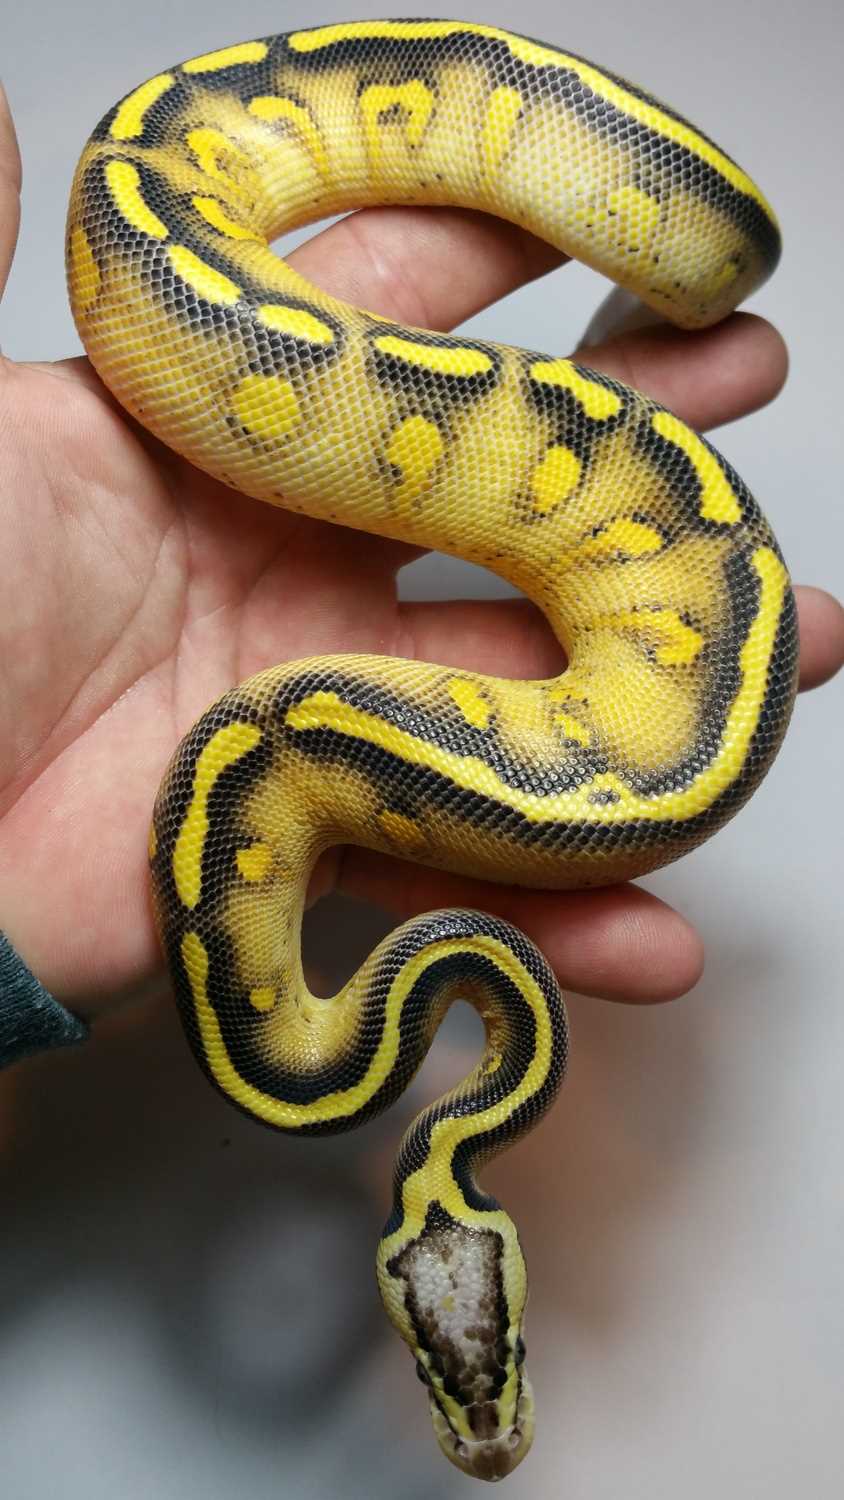 Asphalt ball python